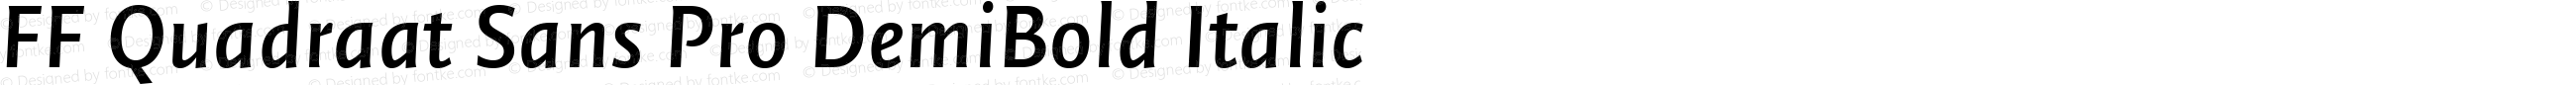 FF Quadraat Sans Pro DemiBold Italic